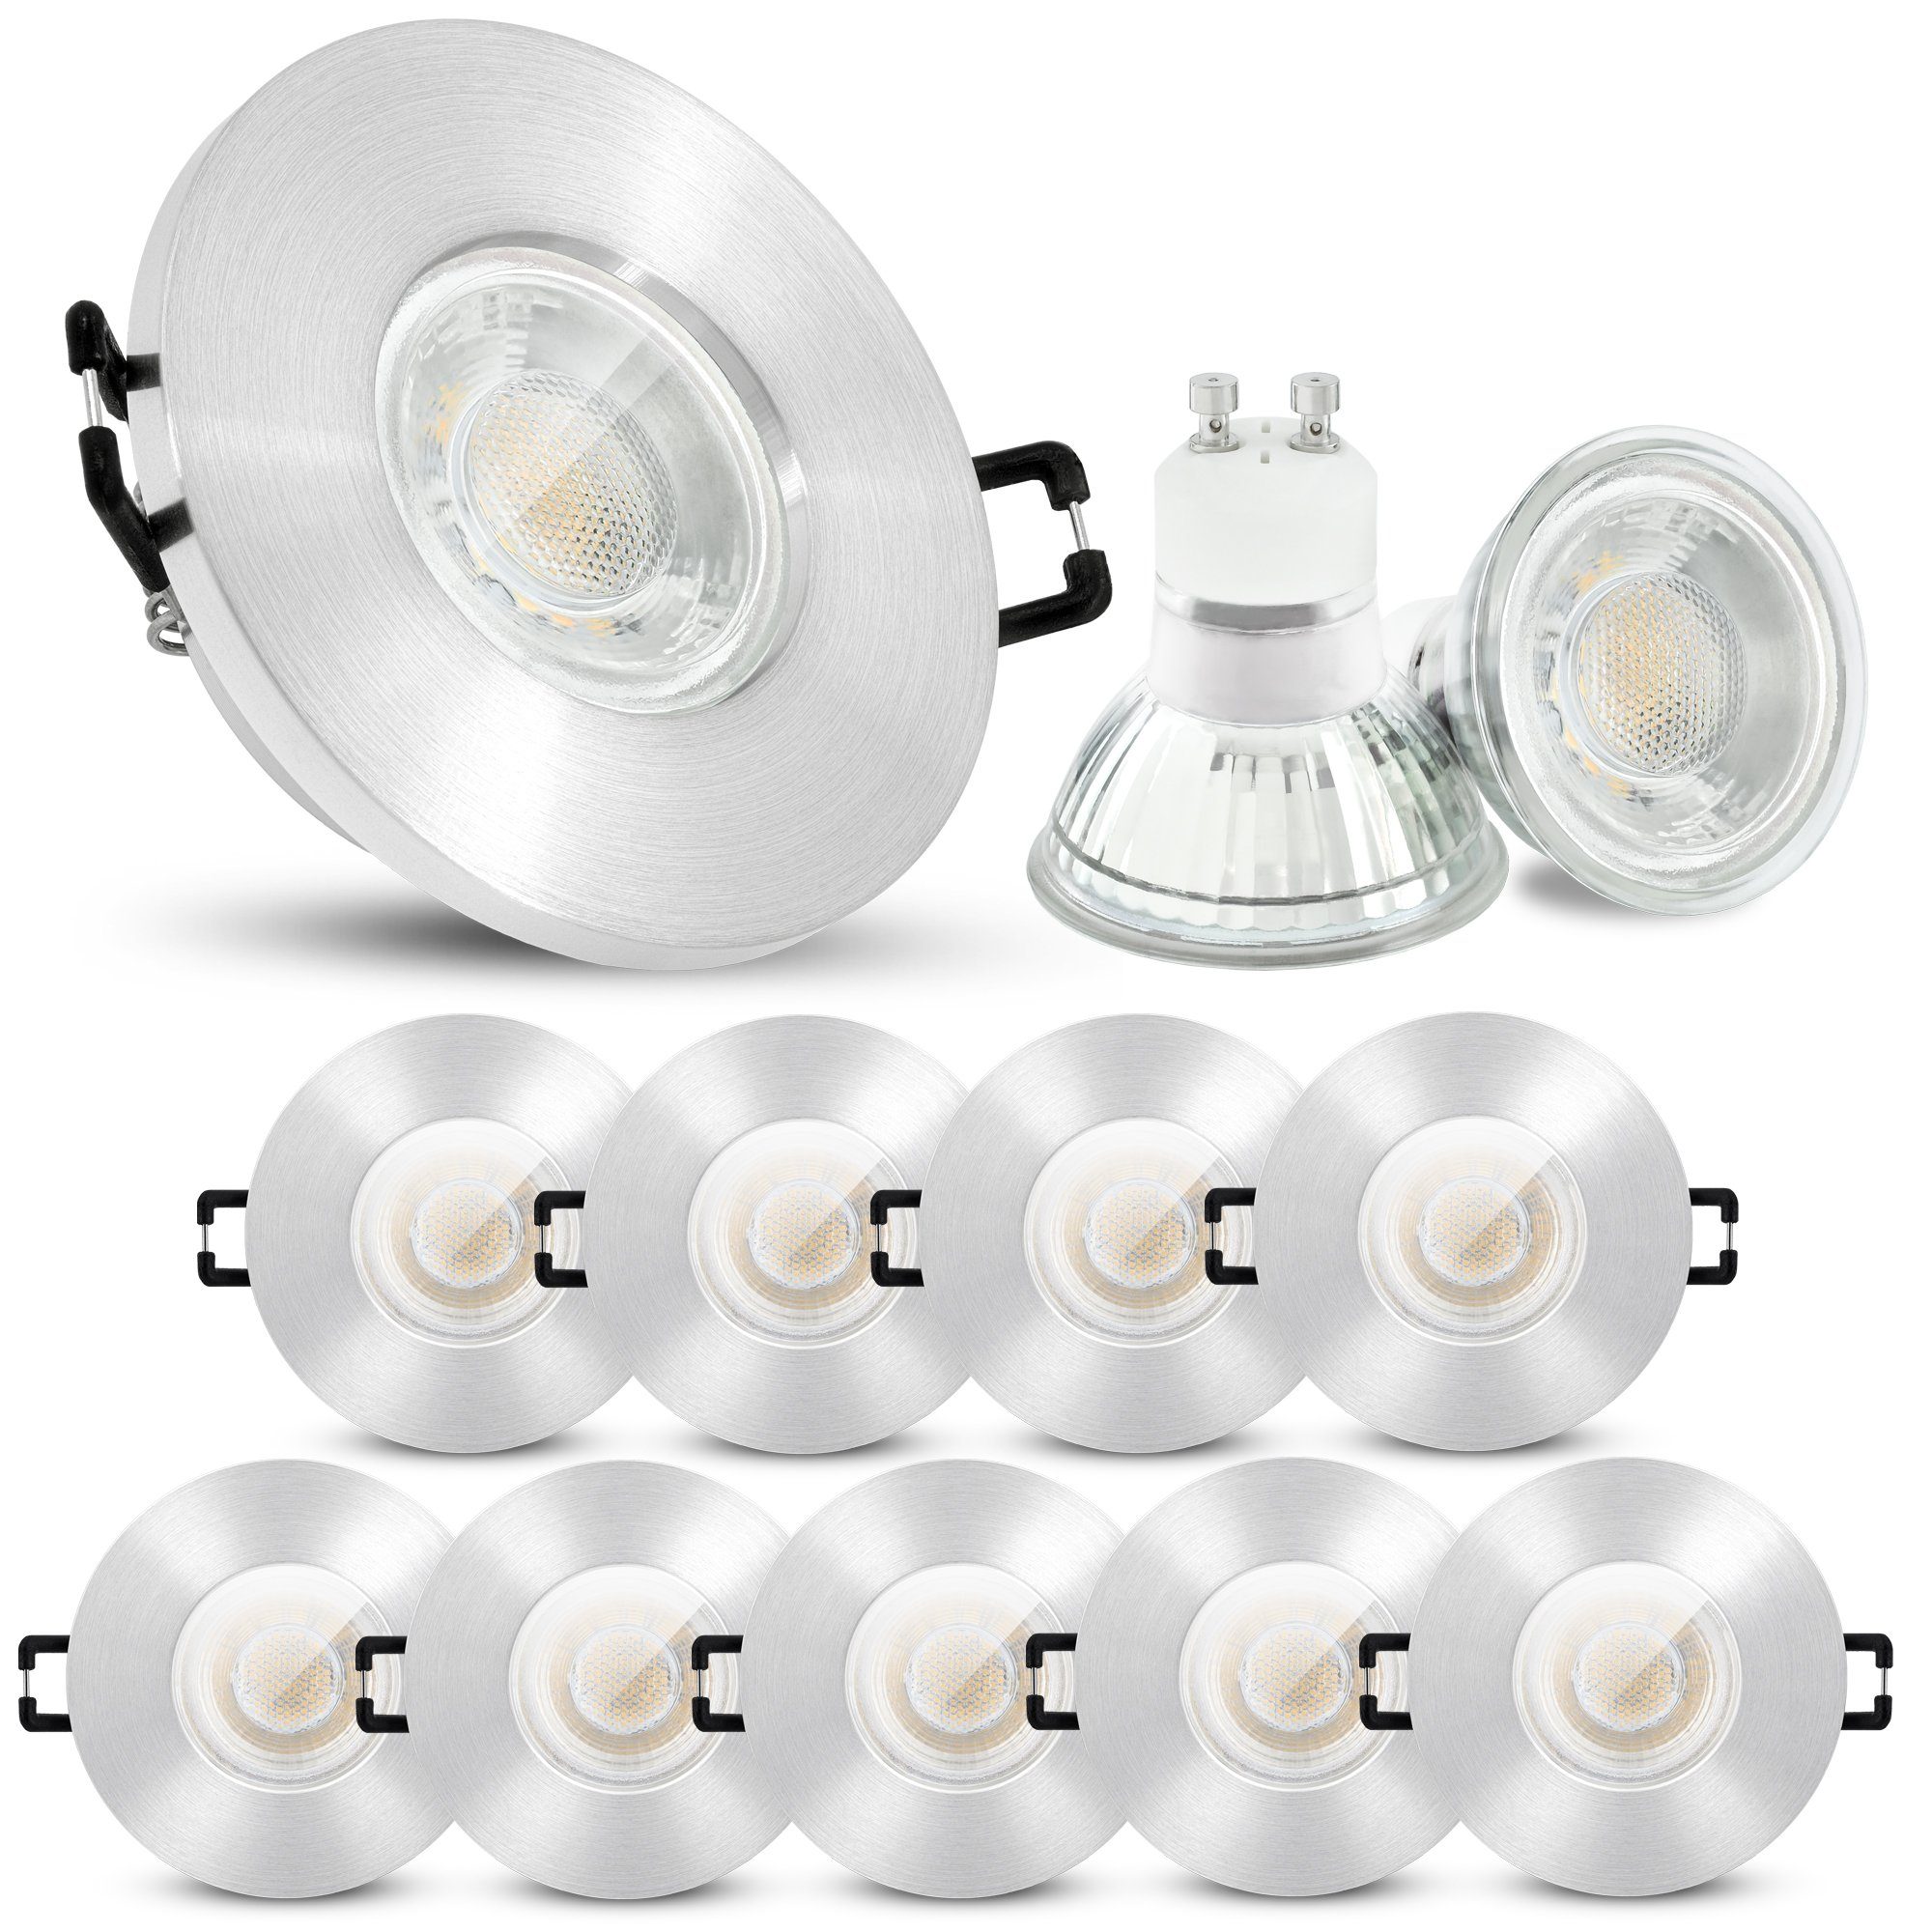 große LED Einbaustrahler 110mm 3,5W Decken Einbau Spots Lampen Leuche,  44,99 €